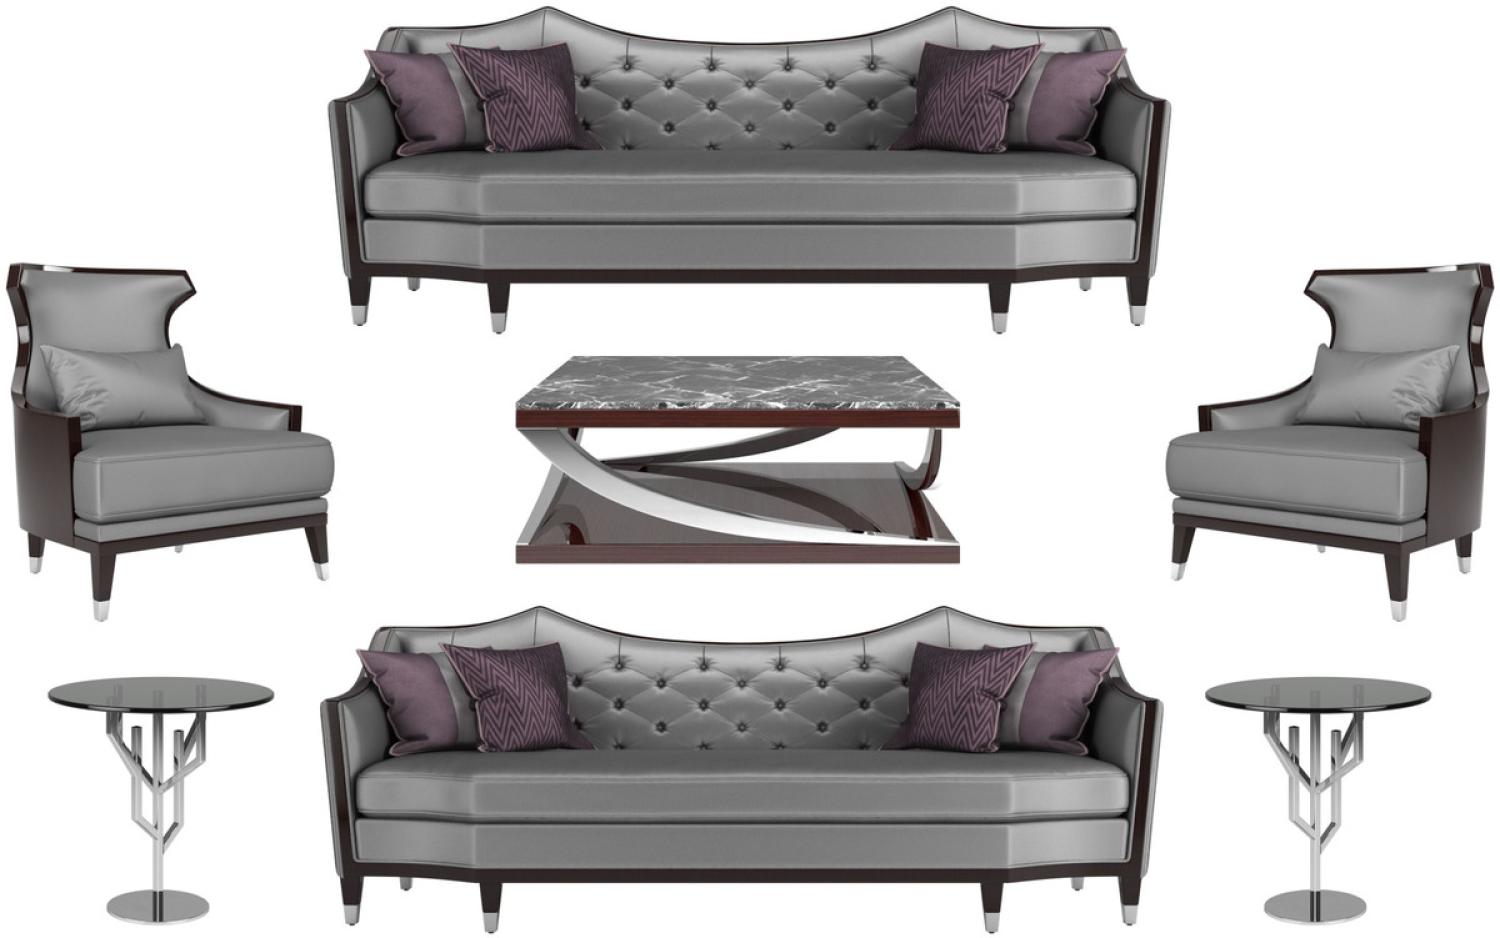 Casa Padrino Luxus Wohnzimmer Set Silber / Schwarz / Dunkelbraun - 2 Sofas & 2 Sessel & 1 Couchtisch & 2 Beistelltische - Luxus Wohnzimmer Möbel Bild 1